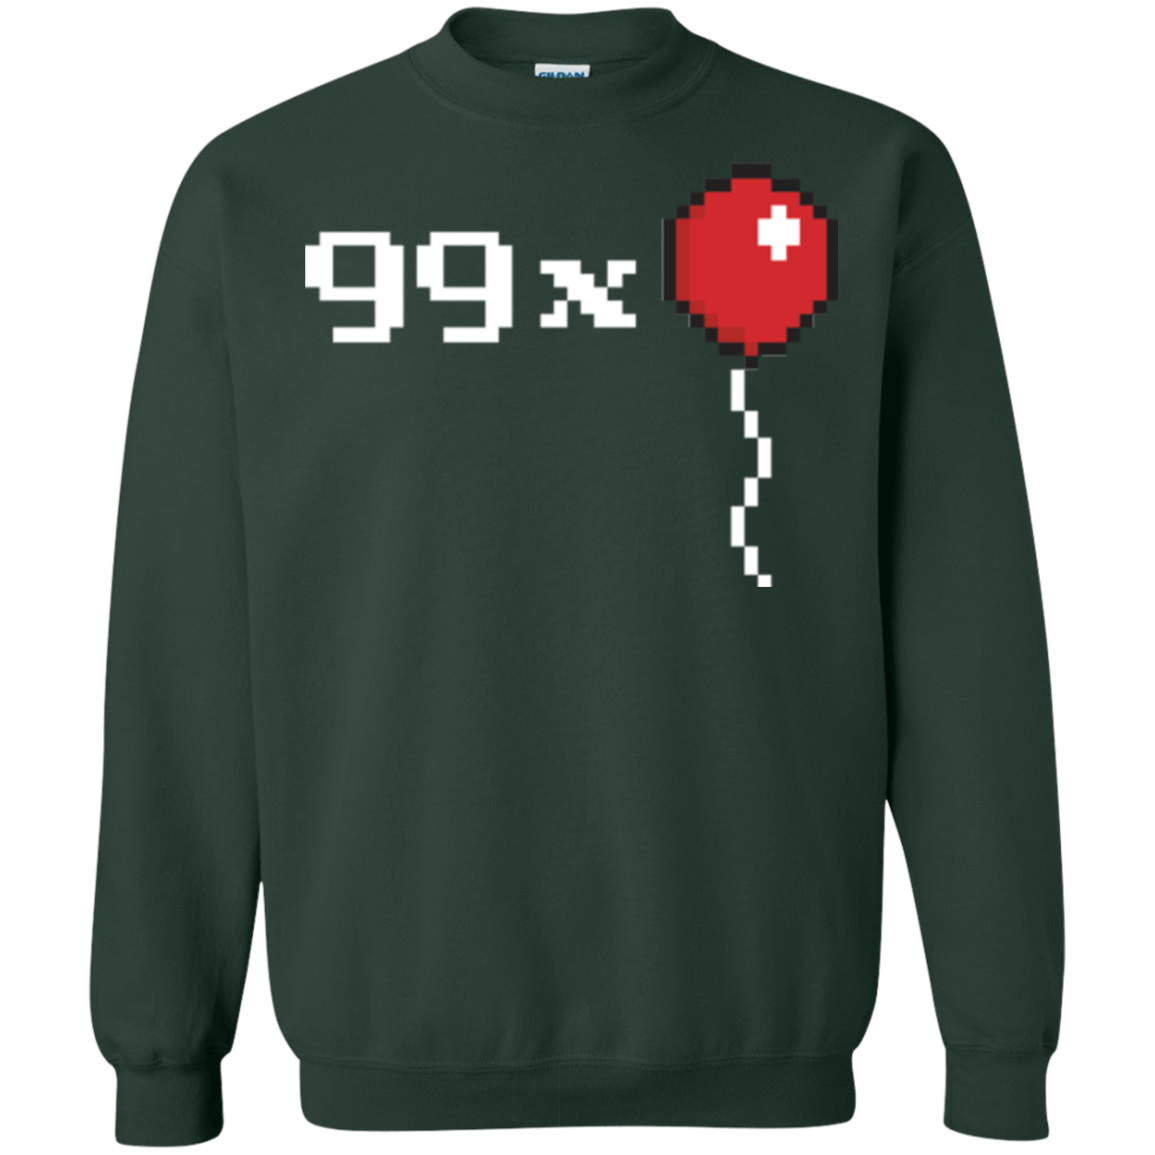 Sweatshirts Forest Green / Small 99x Balloon Crewneck Sweatshirt